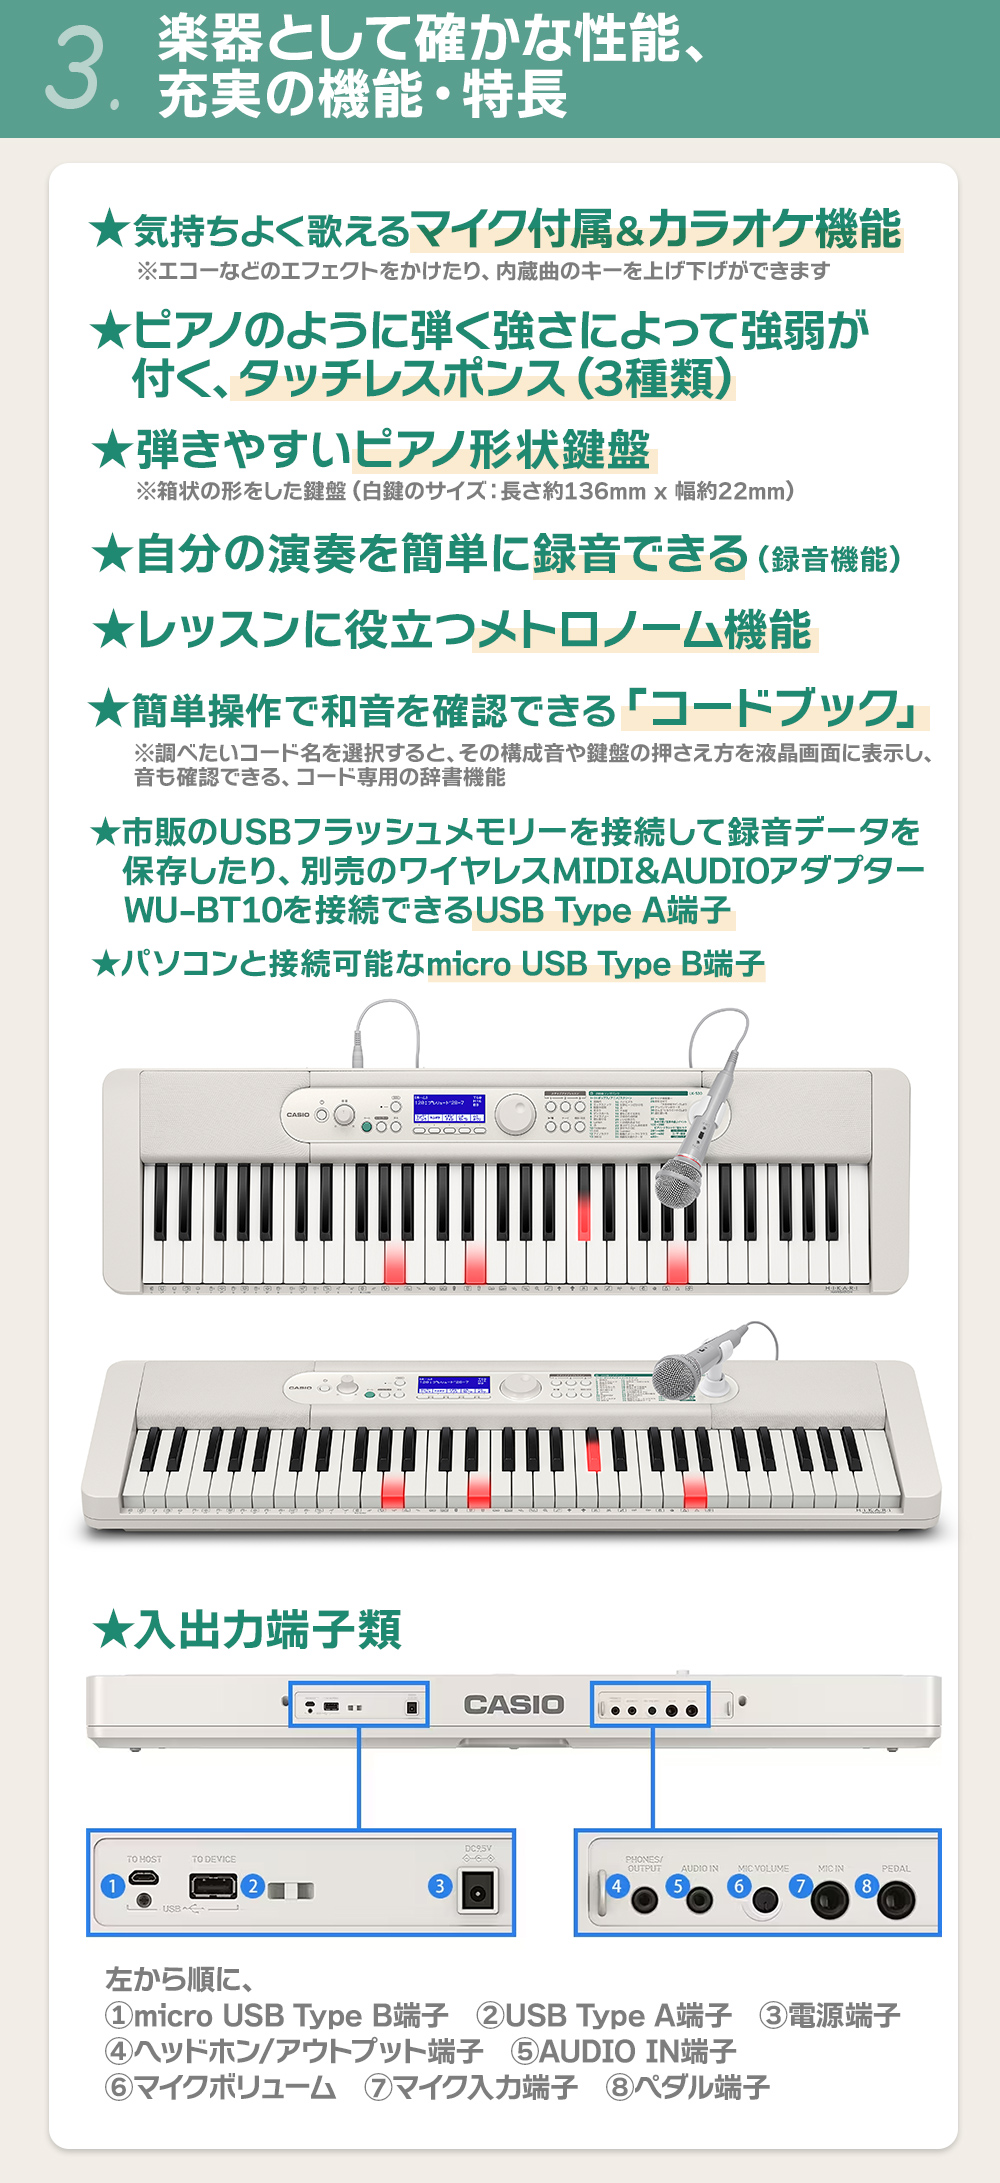 CASIO LK-530 光ナビゲーションキーボード 61鍵盤 カシオ 【LK-520後継